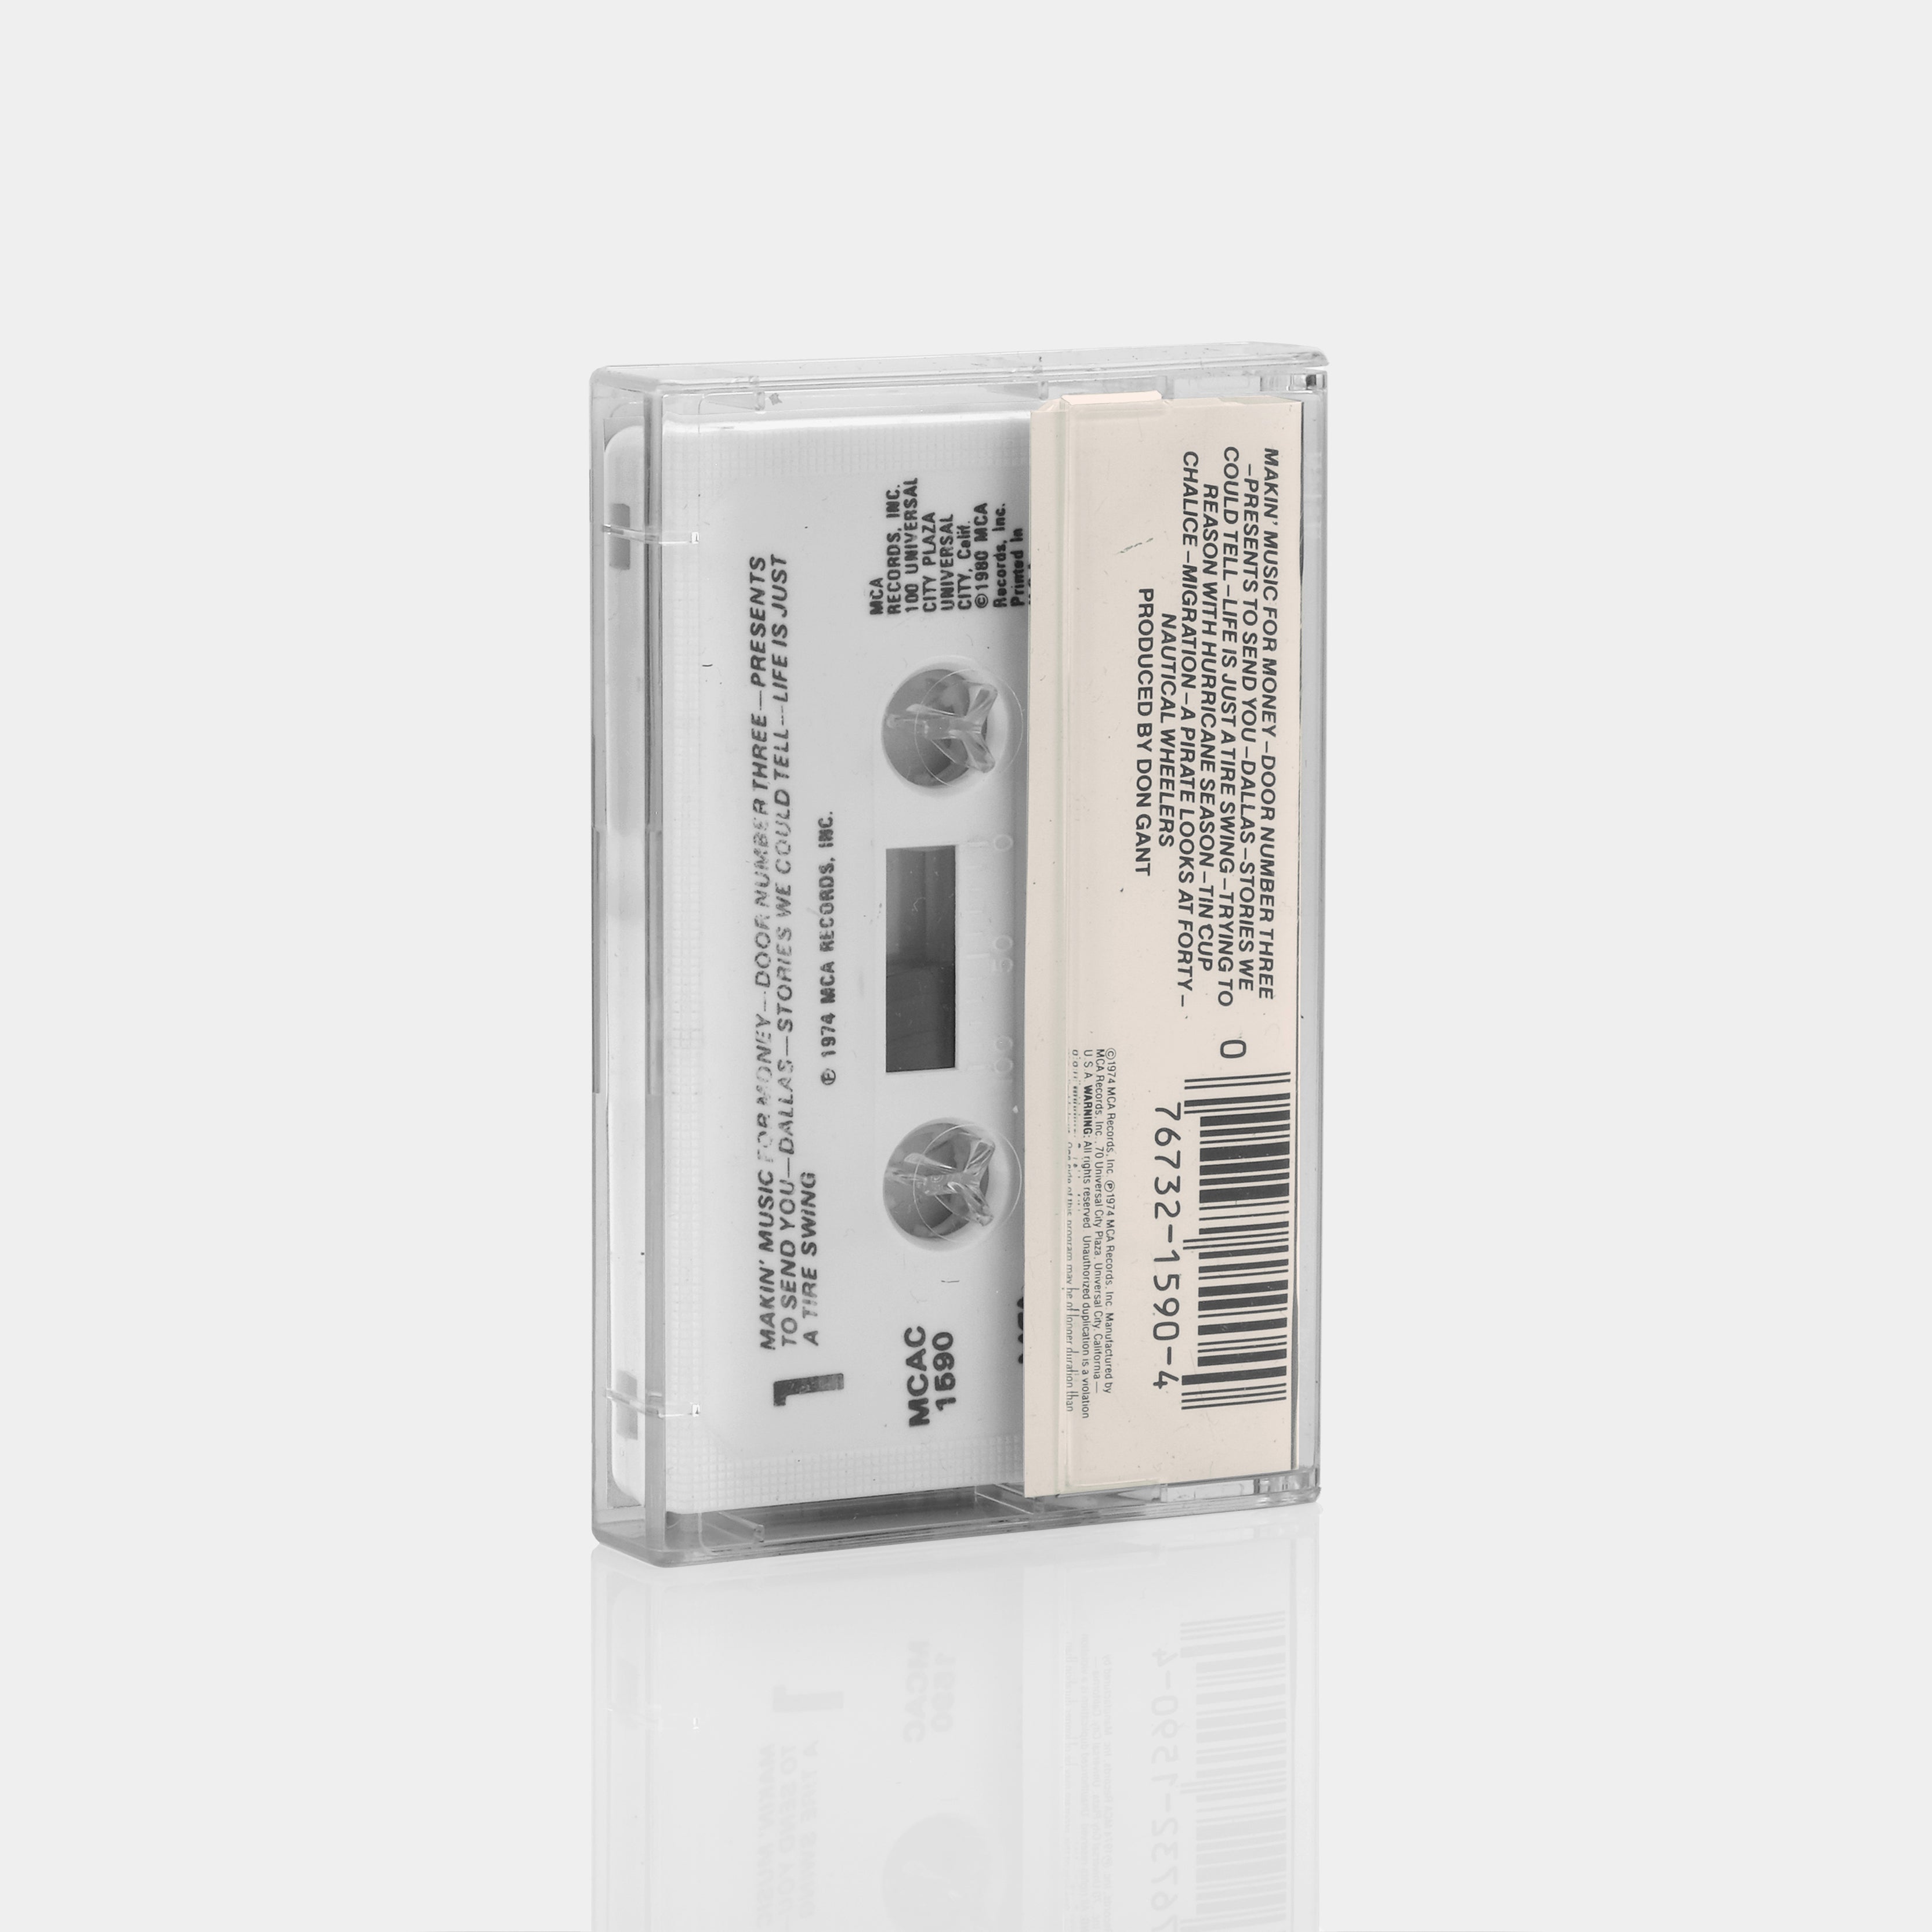 Jimmy Buffett - A1A Cassette Tape